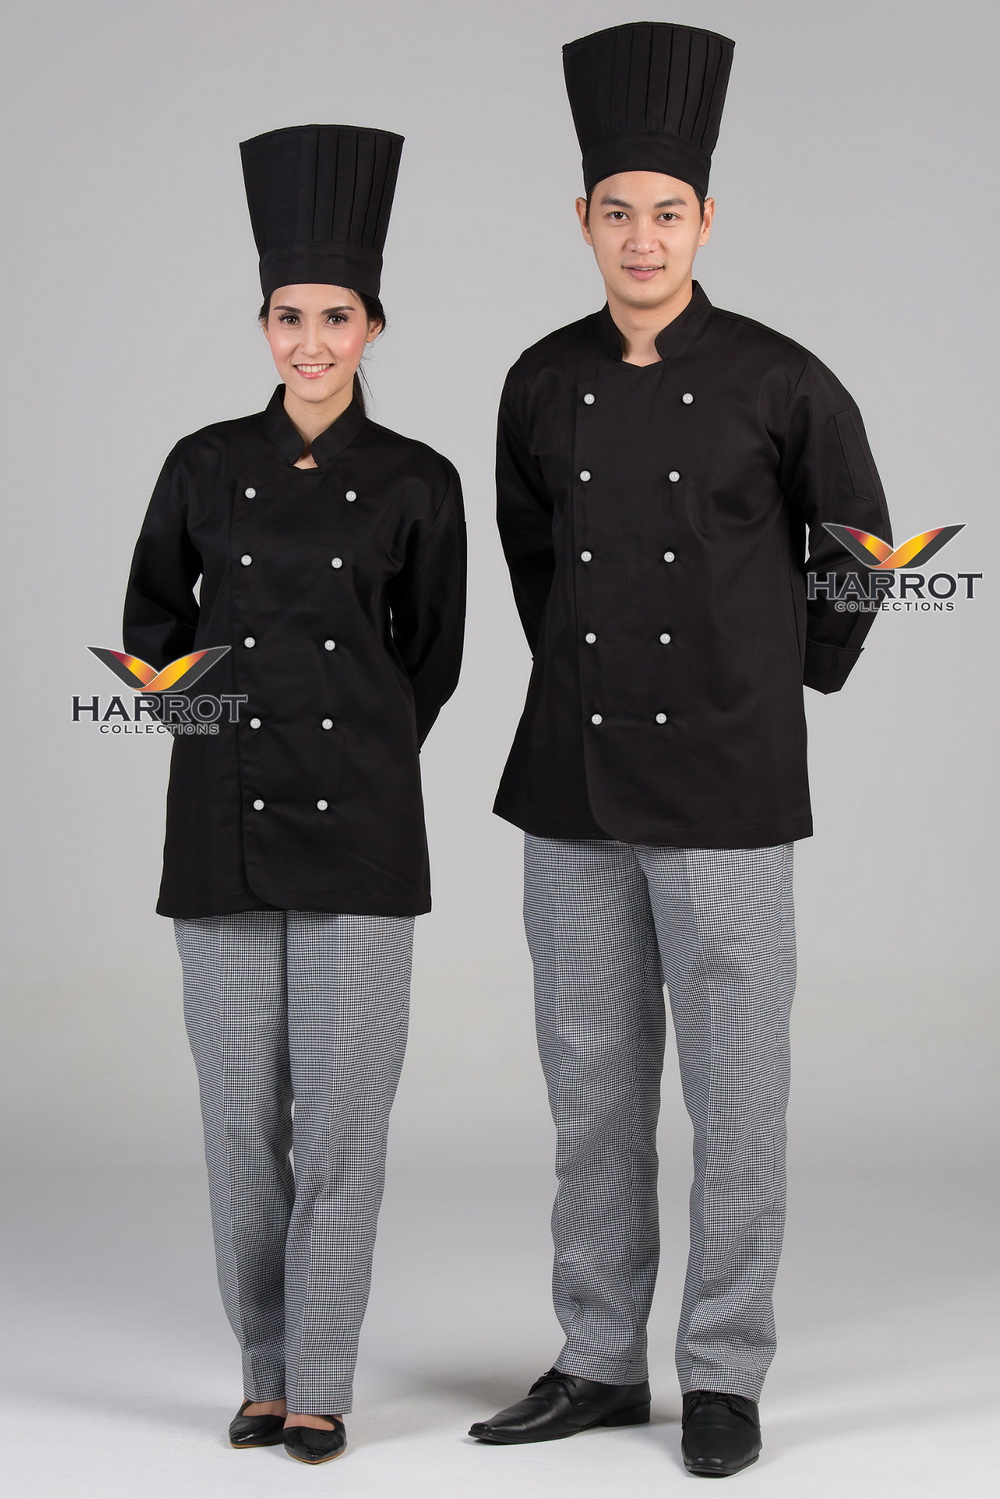 เสื้อกุ๊ก เสื้อเชฟ ชุดเชฟ เสื้อพ่อครัว แขนยาว สีดำ กระดุมถอดได้ สีขาว (FSS0214)